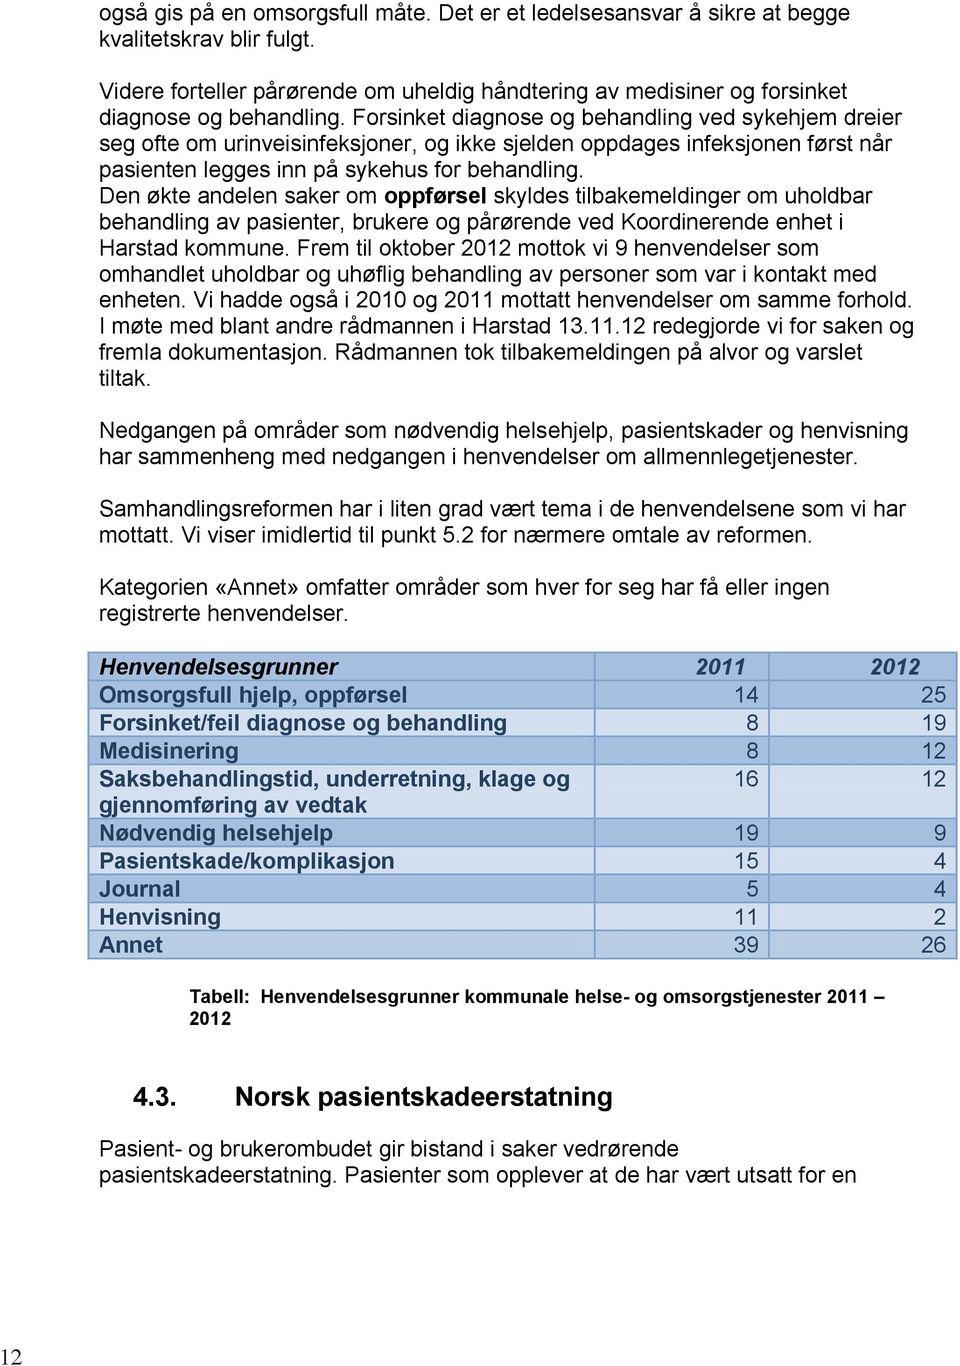 Den økte andelen saker om oppførsel skyldes tilbakemeldinger om uholdbar behandling av pasienter, brukere og pårørende ved Koordinerende enhet i Harstad kommune.